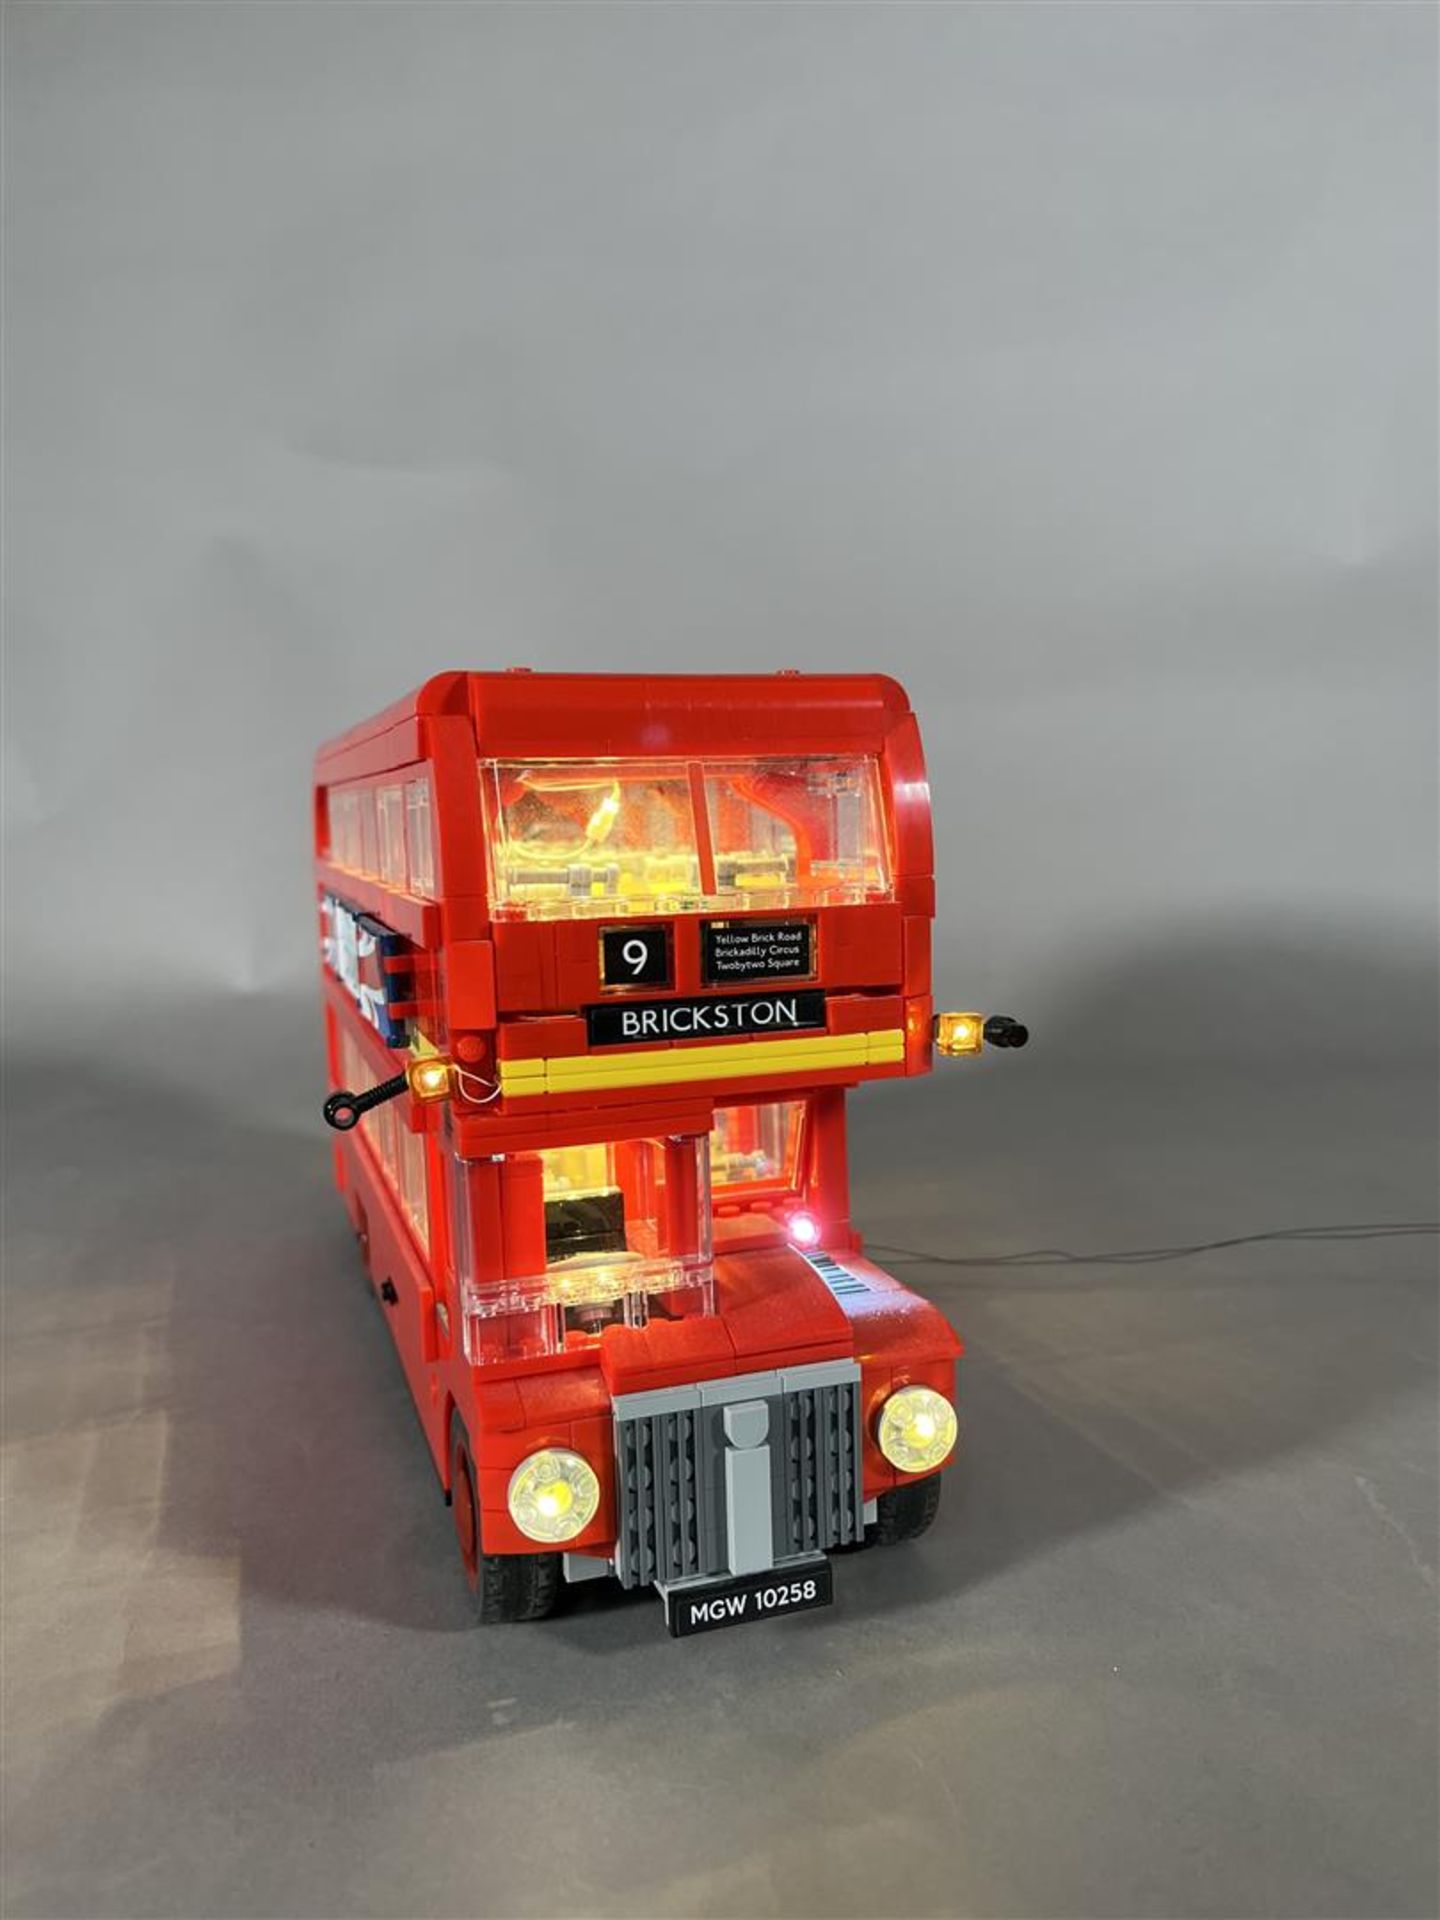 Lego - London Bus. 10258. - Image 2 of 5